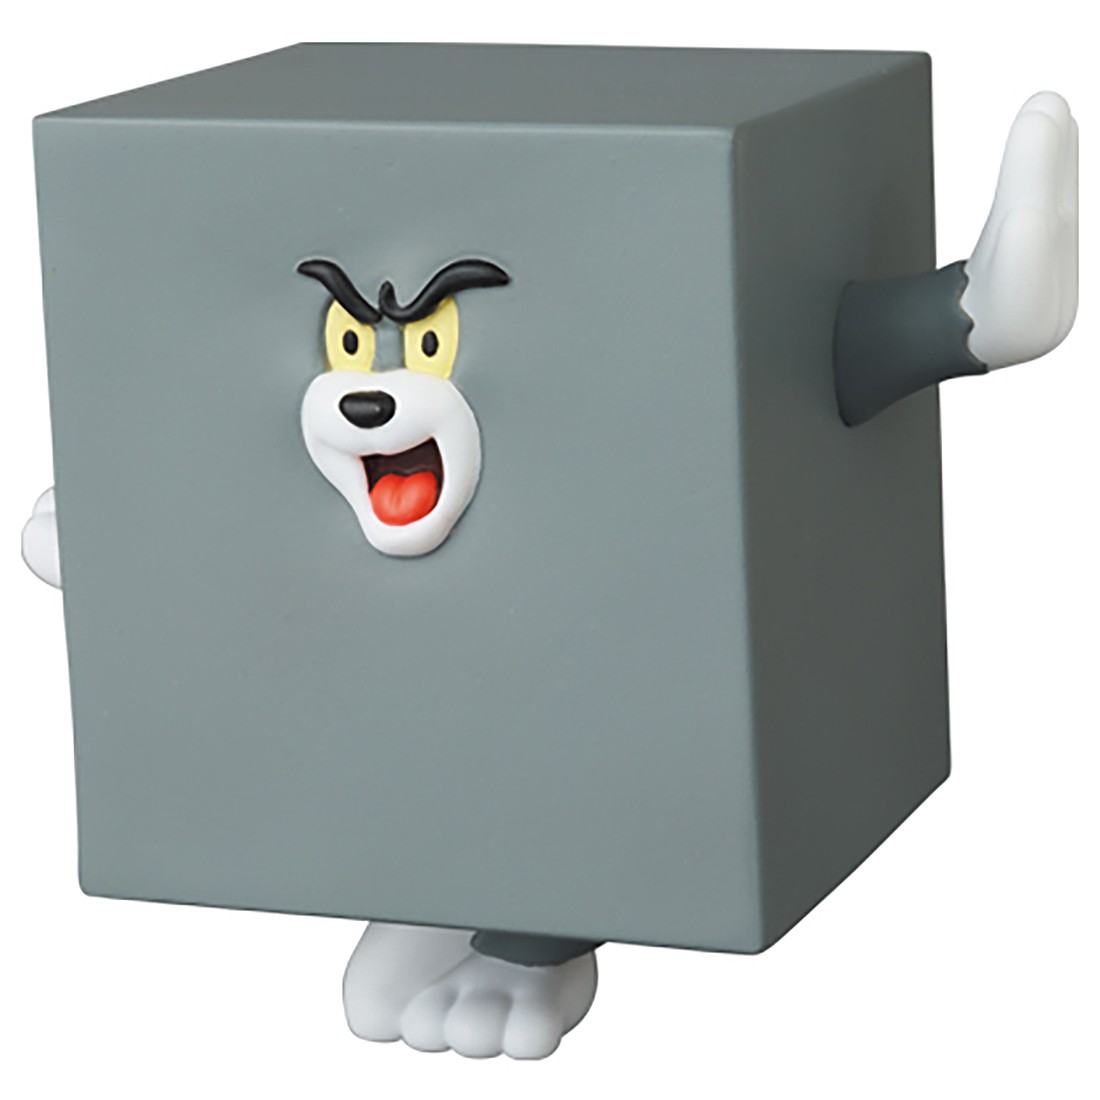 Medicom UDF Tom And Jerry Series 2 - Square Tom Figure gray